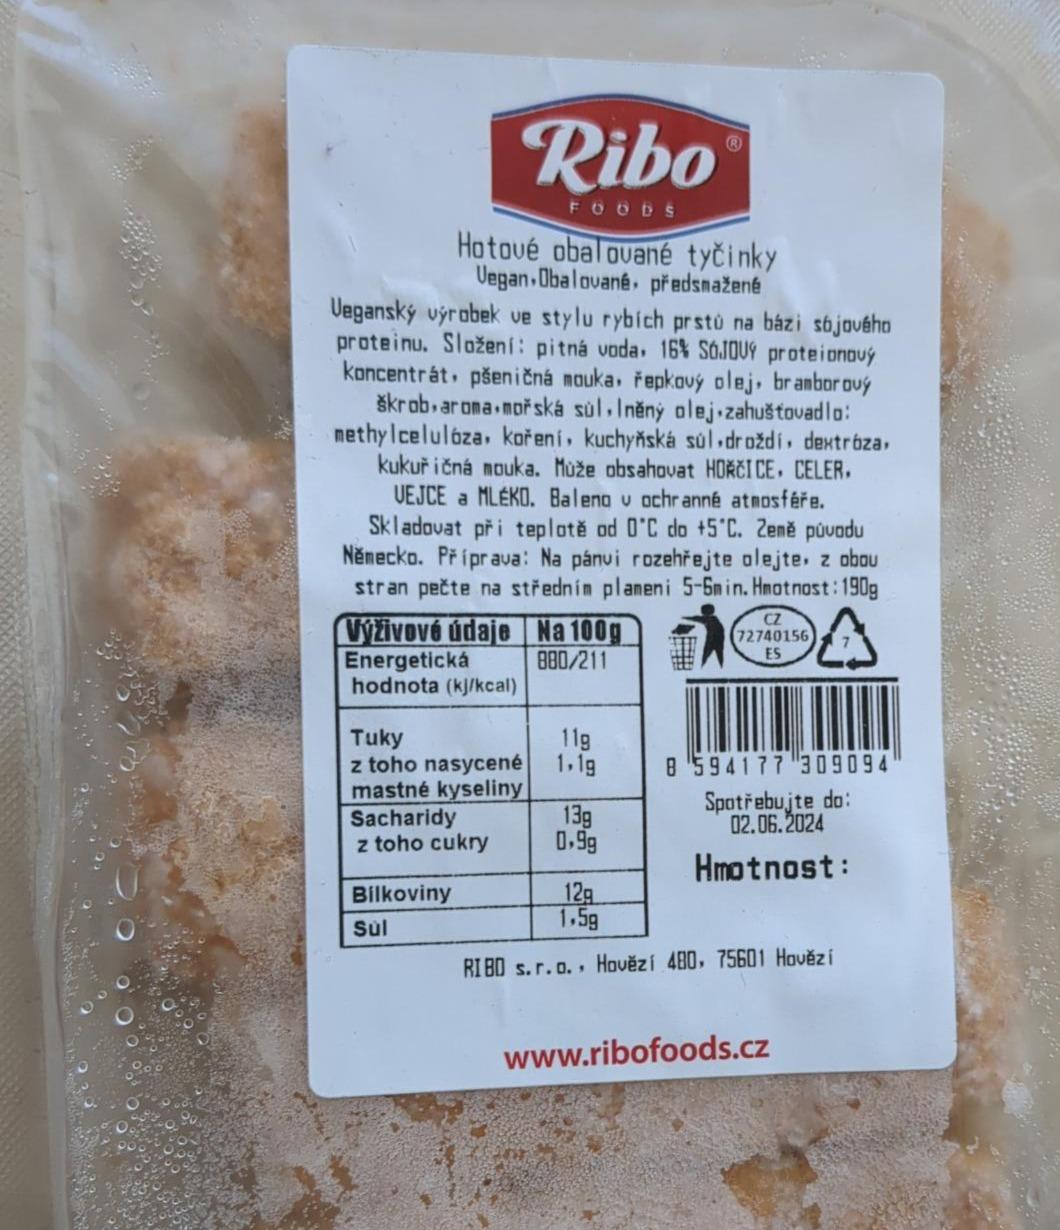 Fotografie - Hotové obalované tyčinky Ribo foods